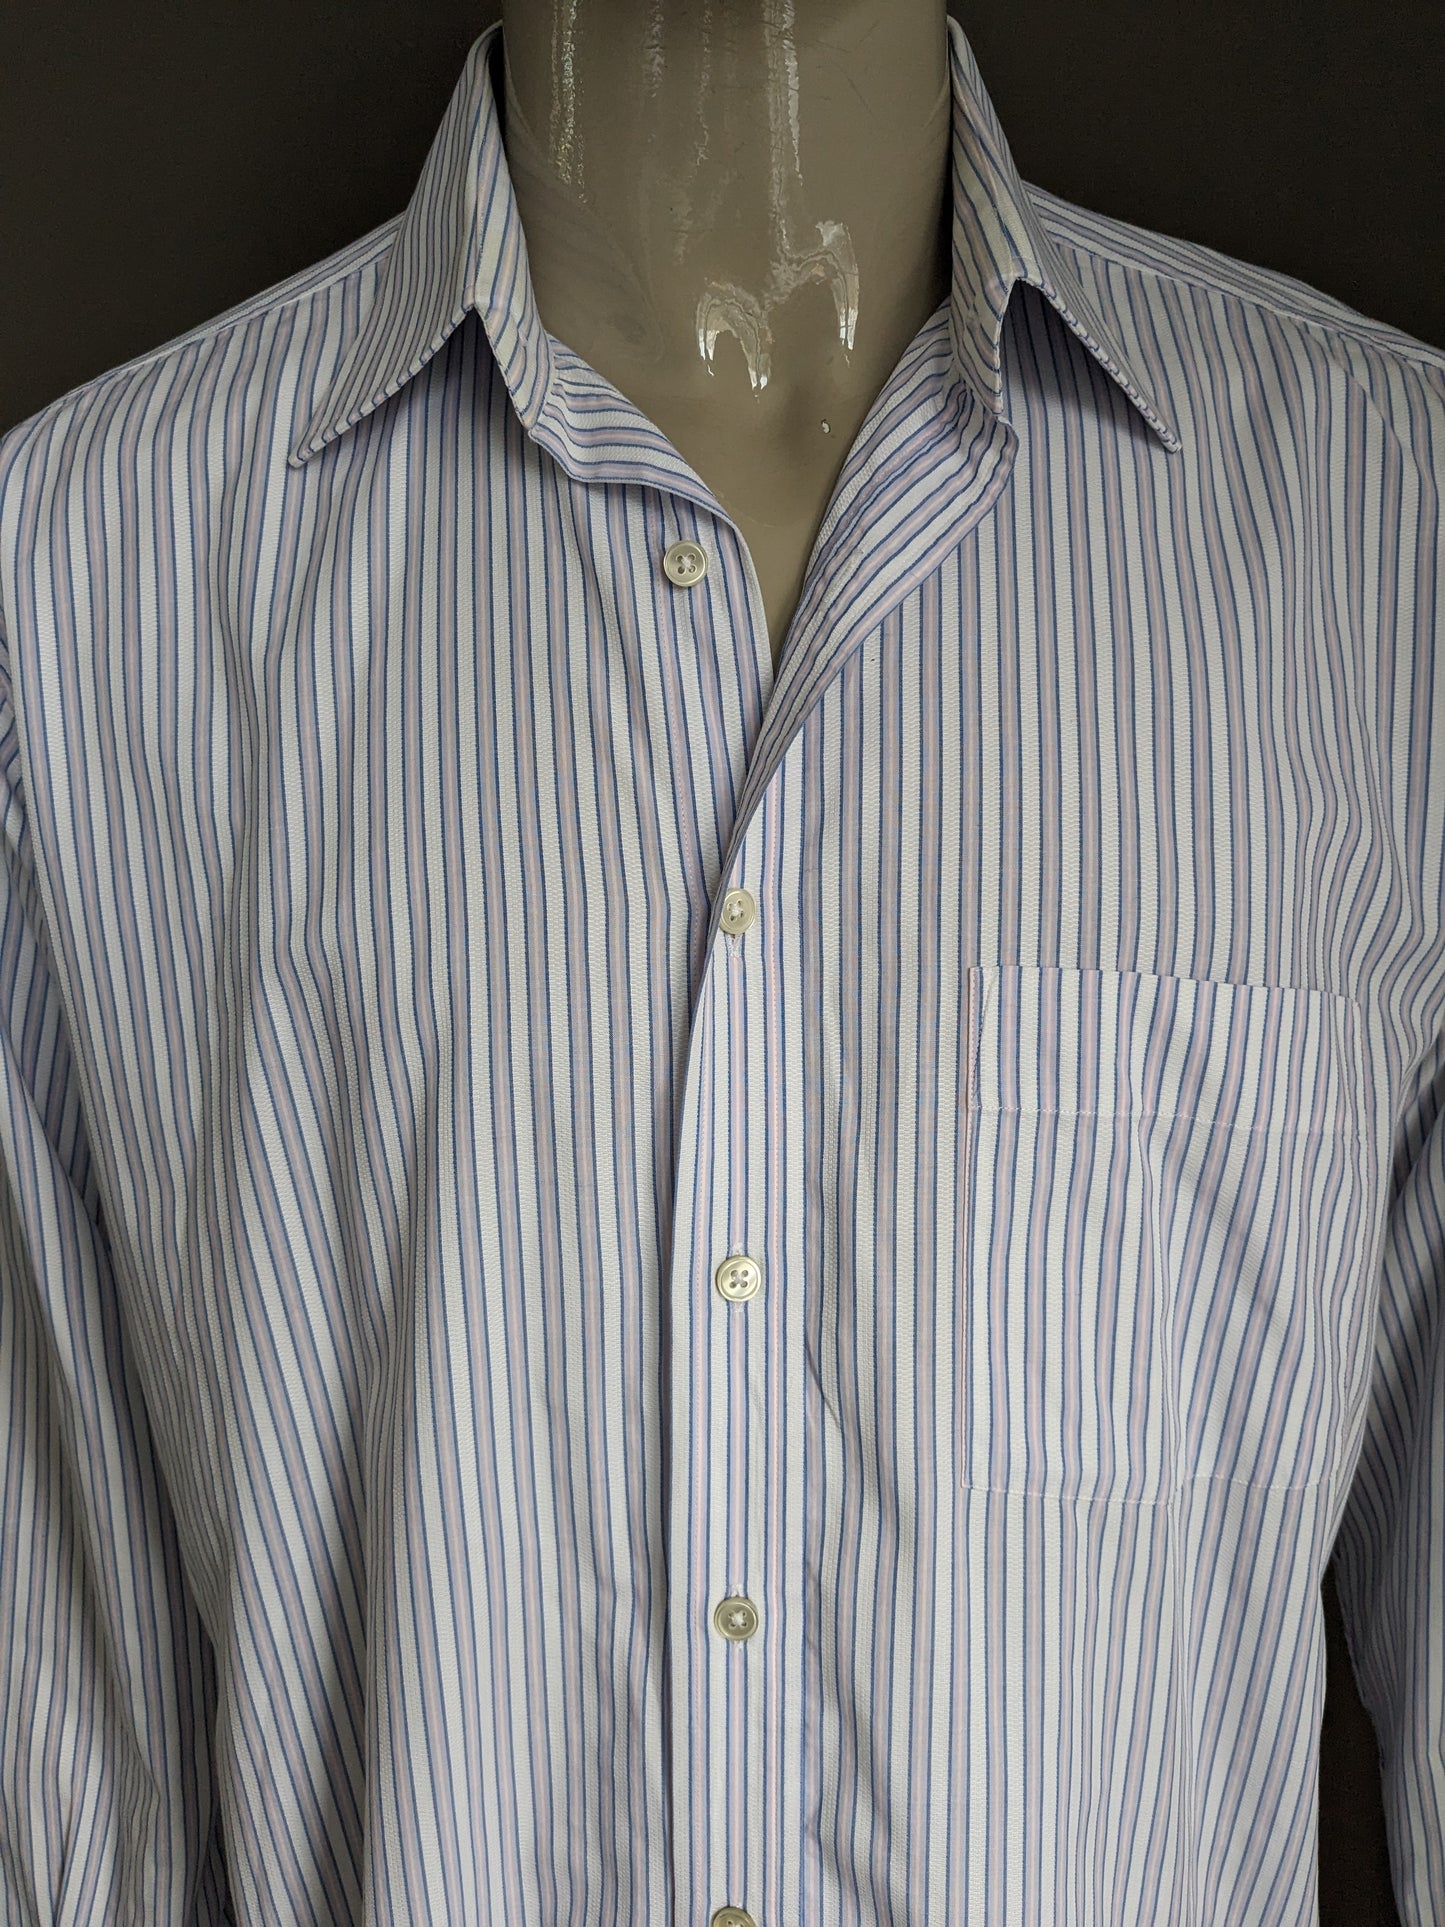 Vintage Arrow overhemd. Blauw Roze Wit gestreept. Maat XL.